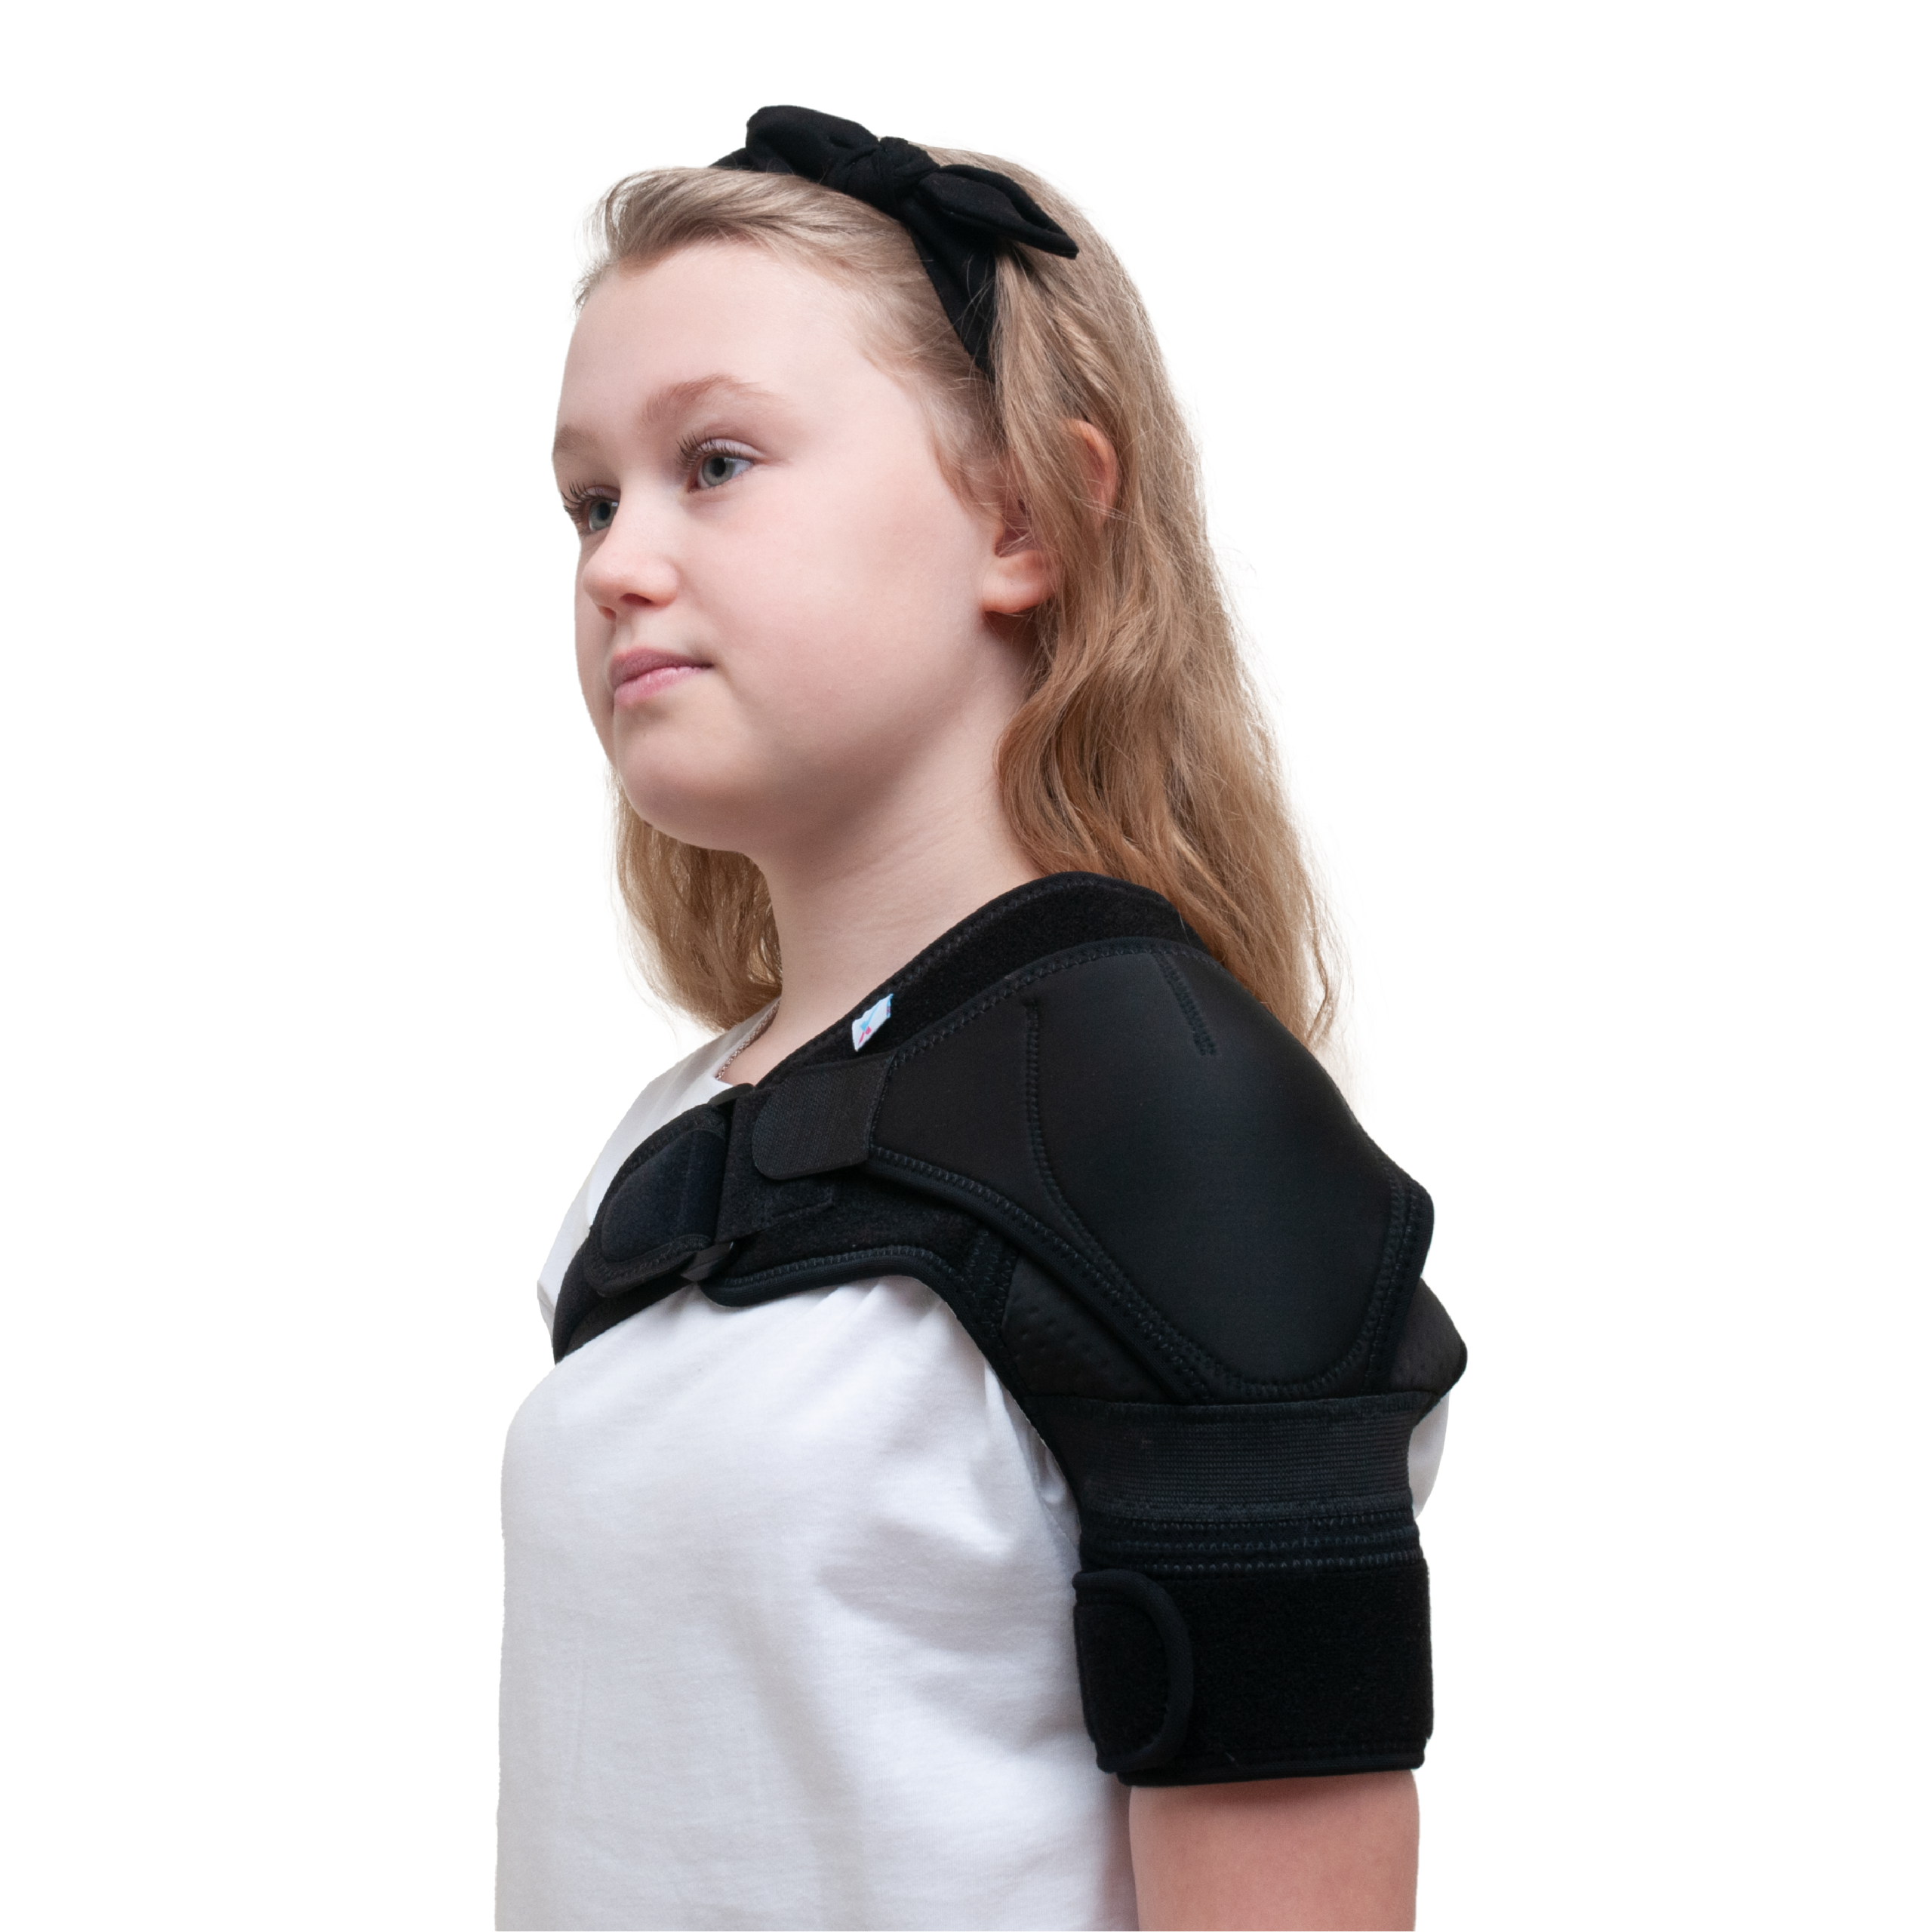 Children's Shoulder Stabiliser Support